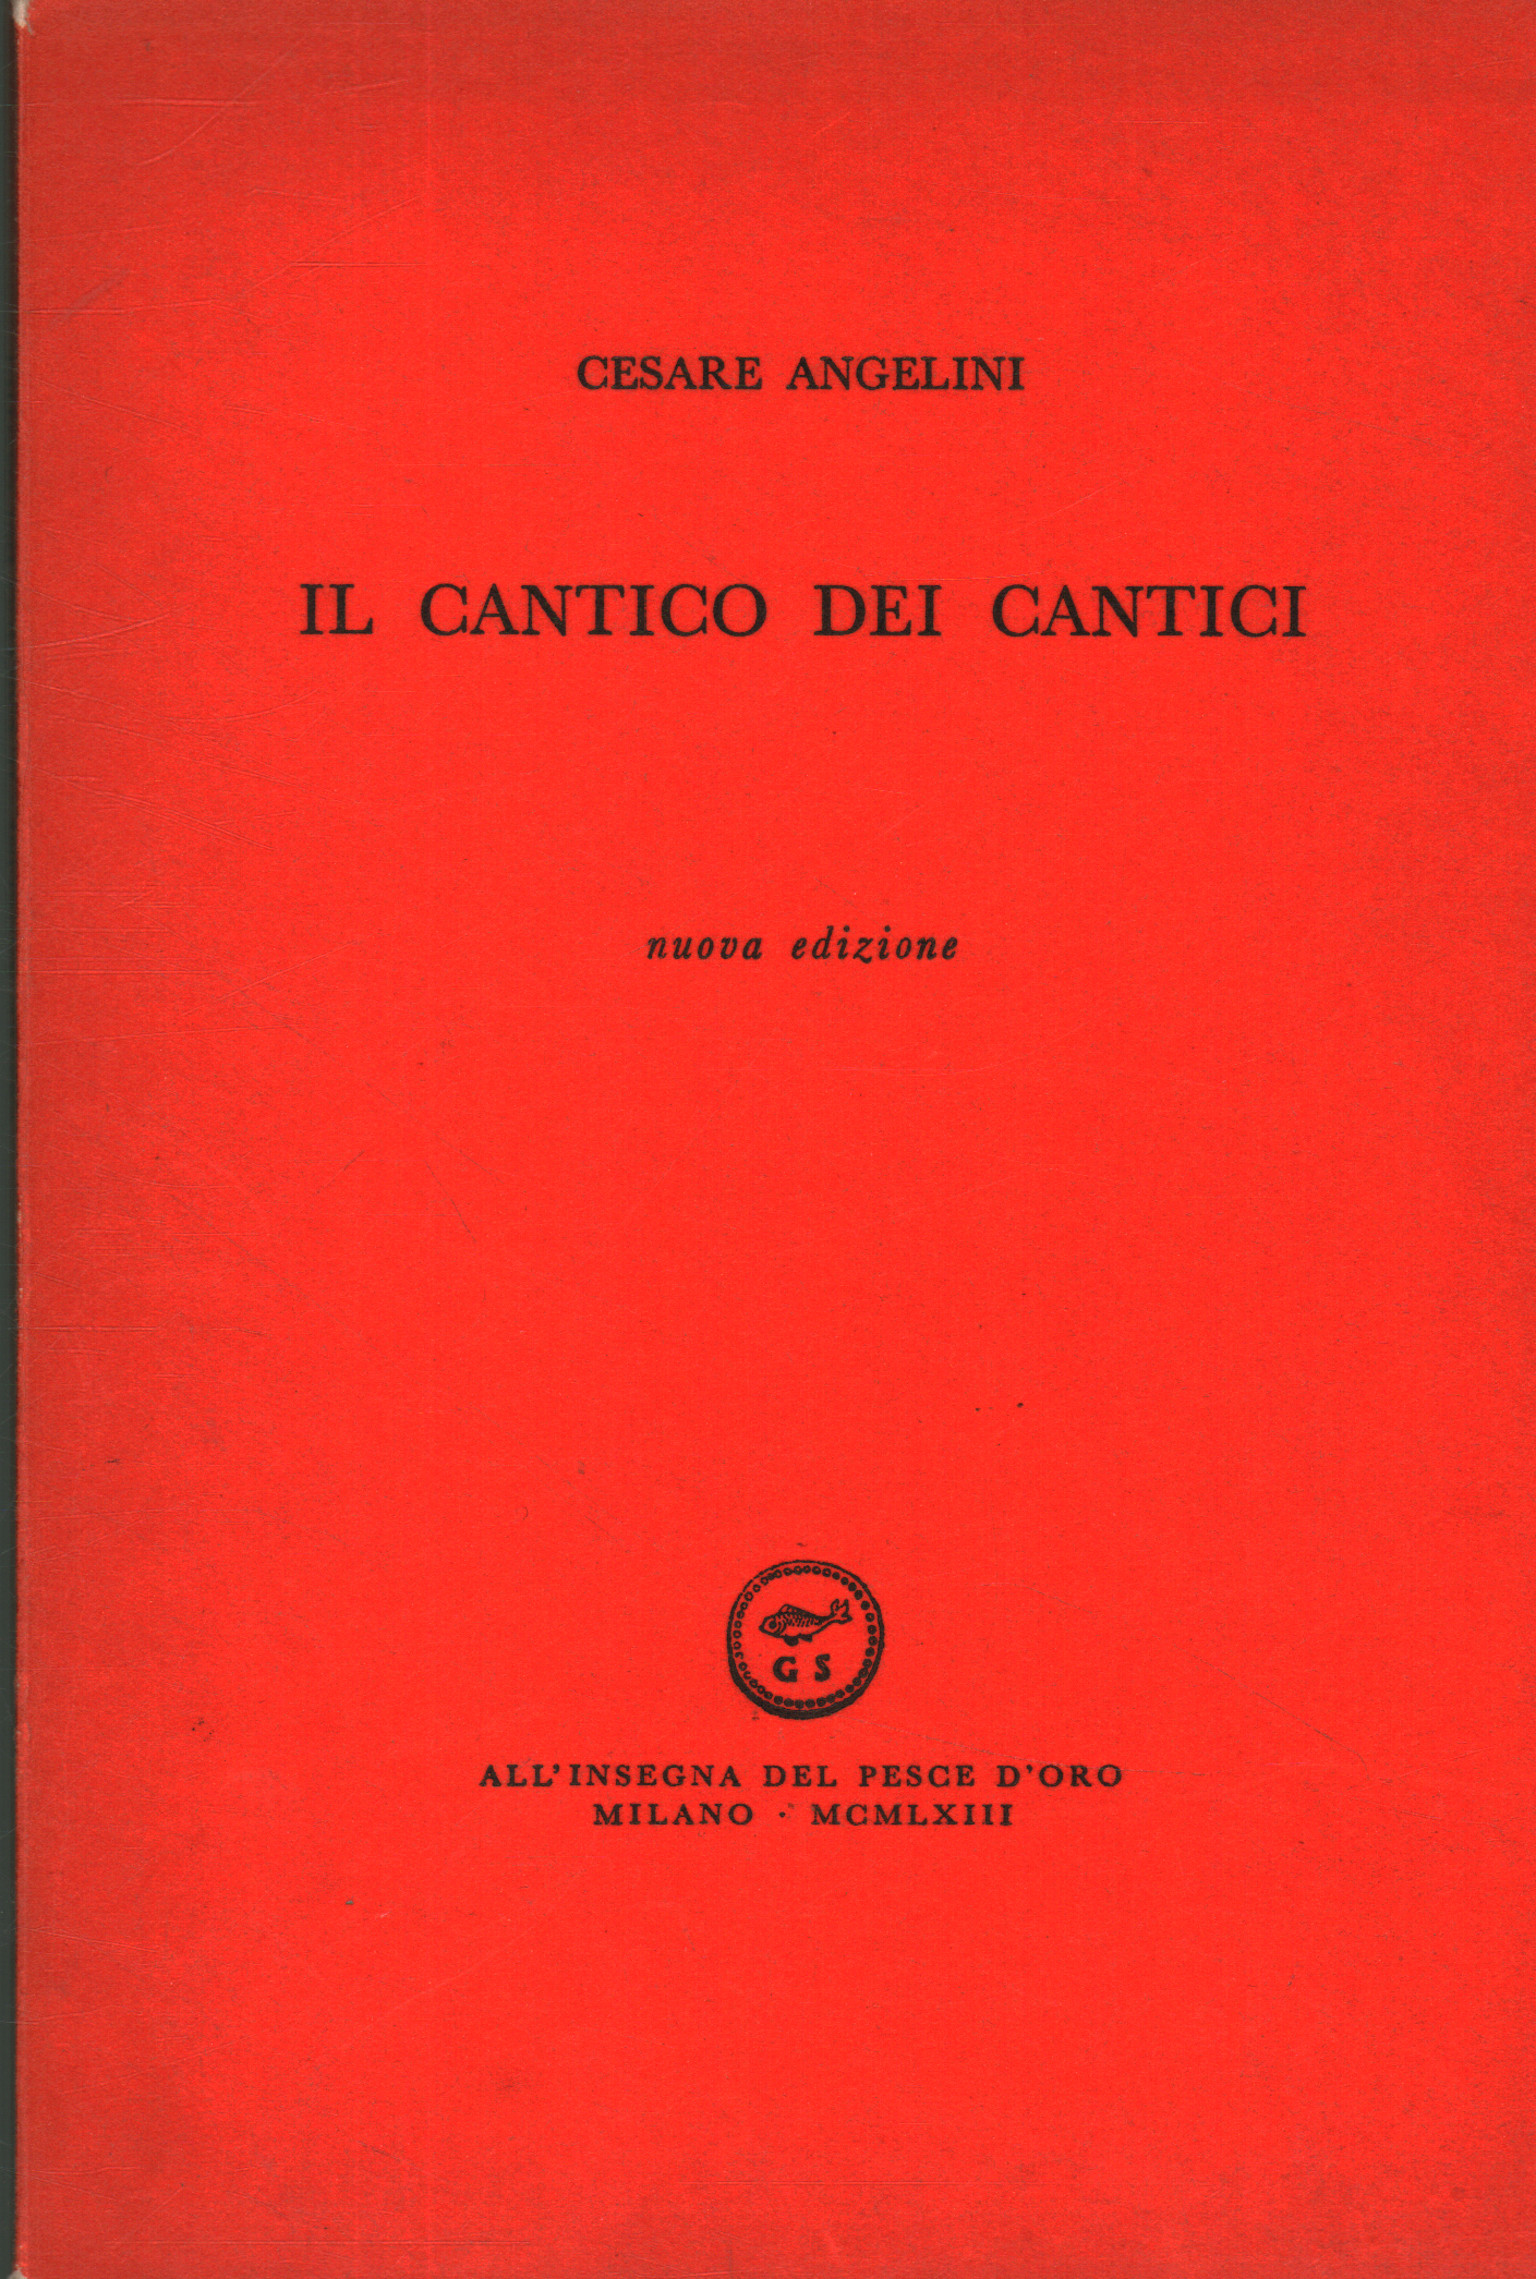 Il cantico dei cantici, Cesare Angelini